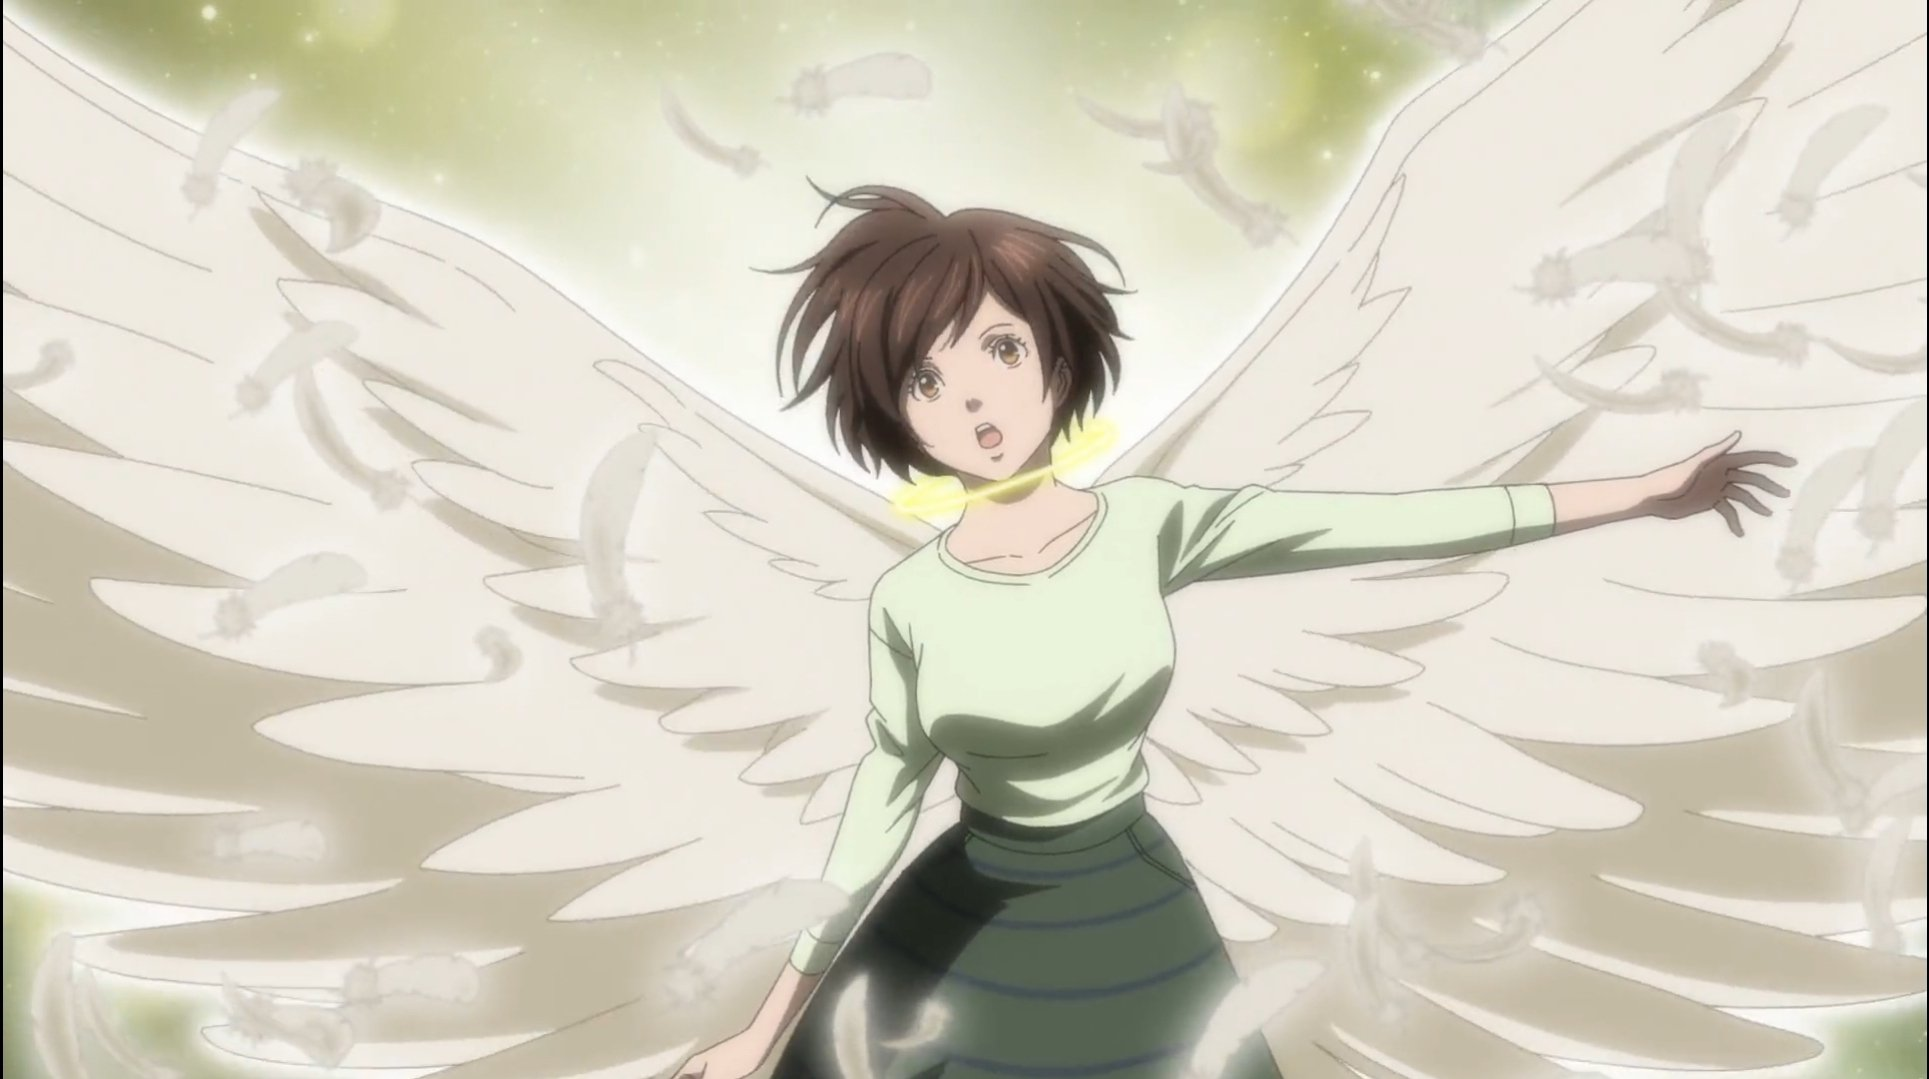 wing wings cool art yeet anime angel accessories  Angel Wings  Pencil Drawing HD Png Download  vhv